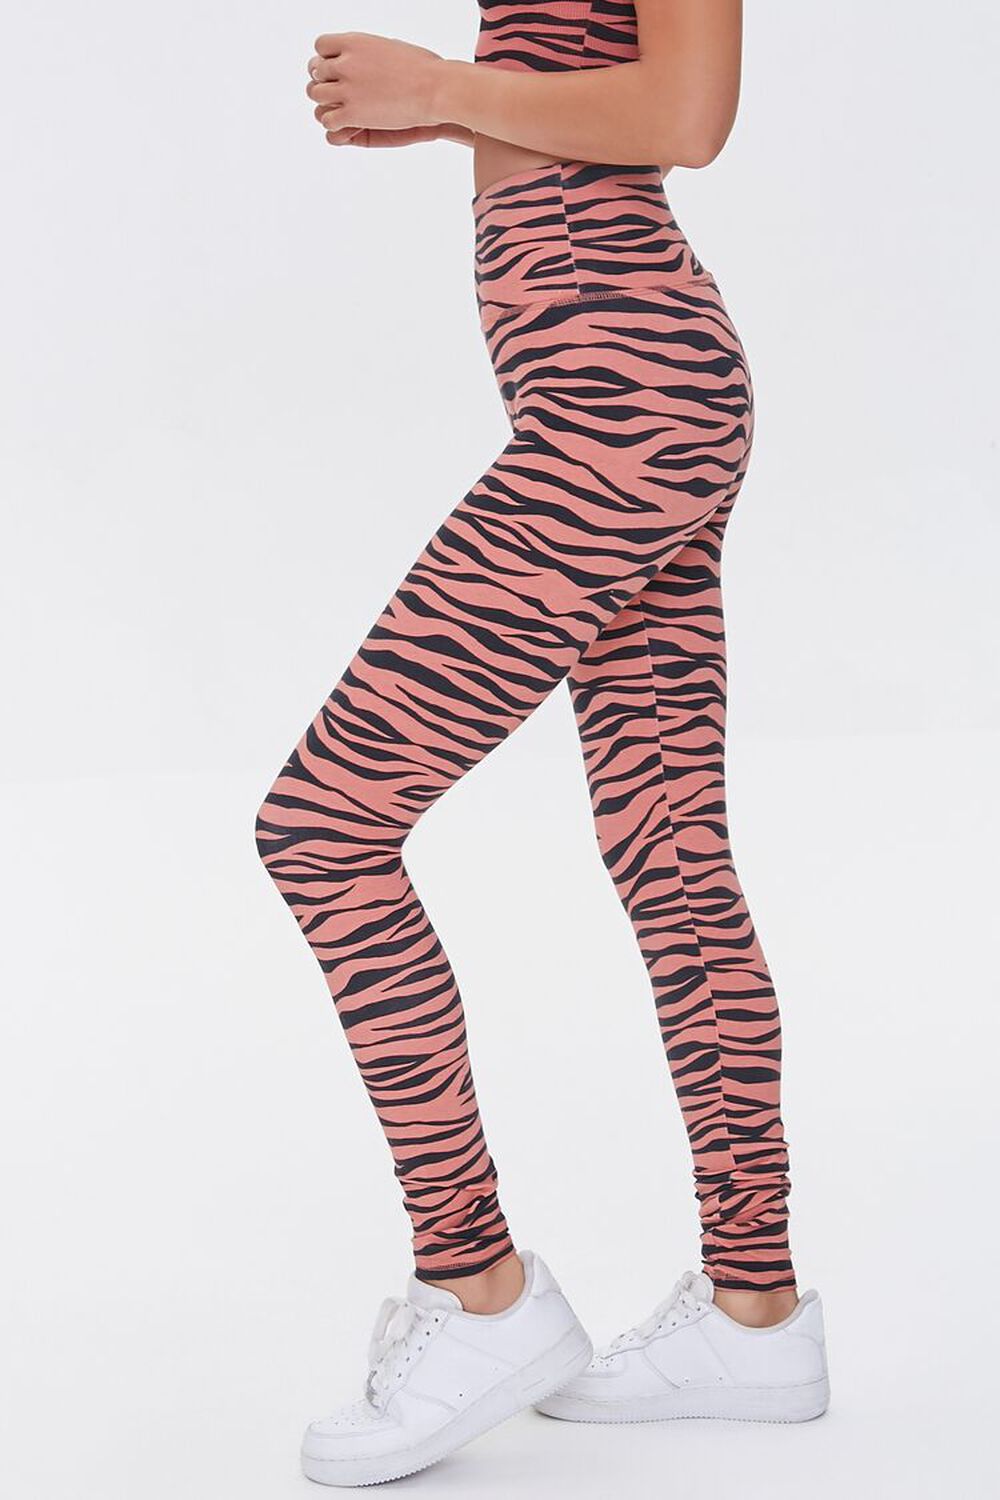 ROSE/BLACK Active Tiger Striped Leggings, image 3